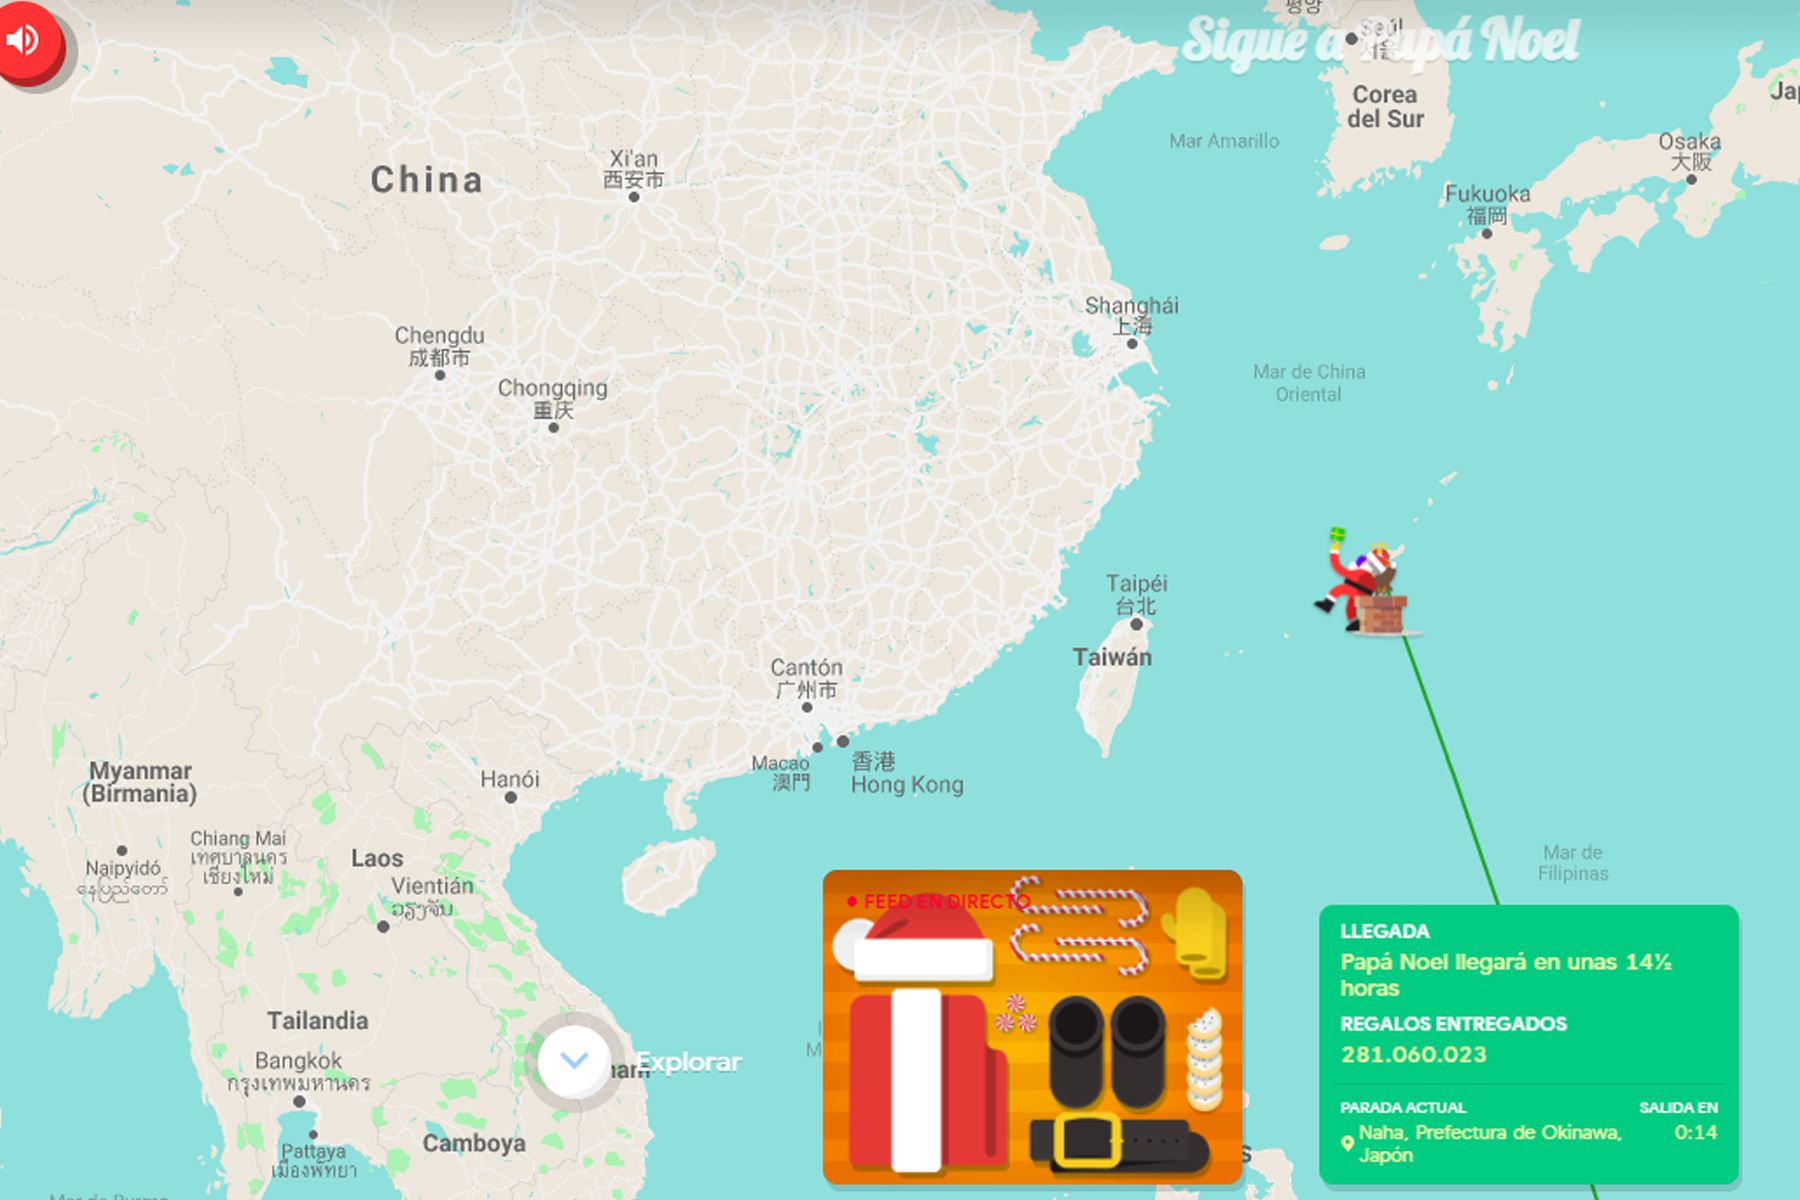 Santa Tracker permite saber dónde está Papá Noel "en tiempo real" durante la Noche Buena. Foto: Captura de pantalla.